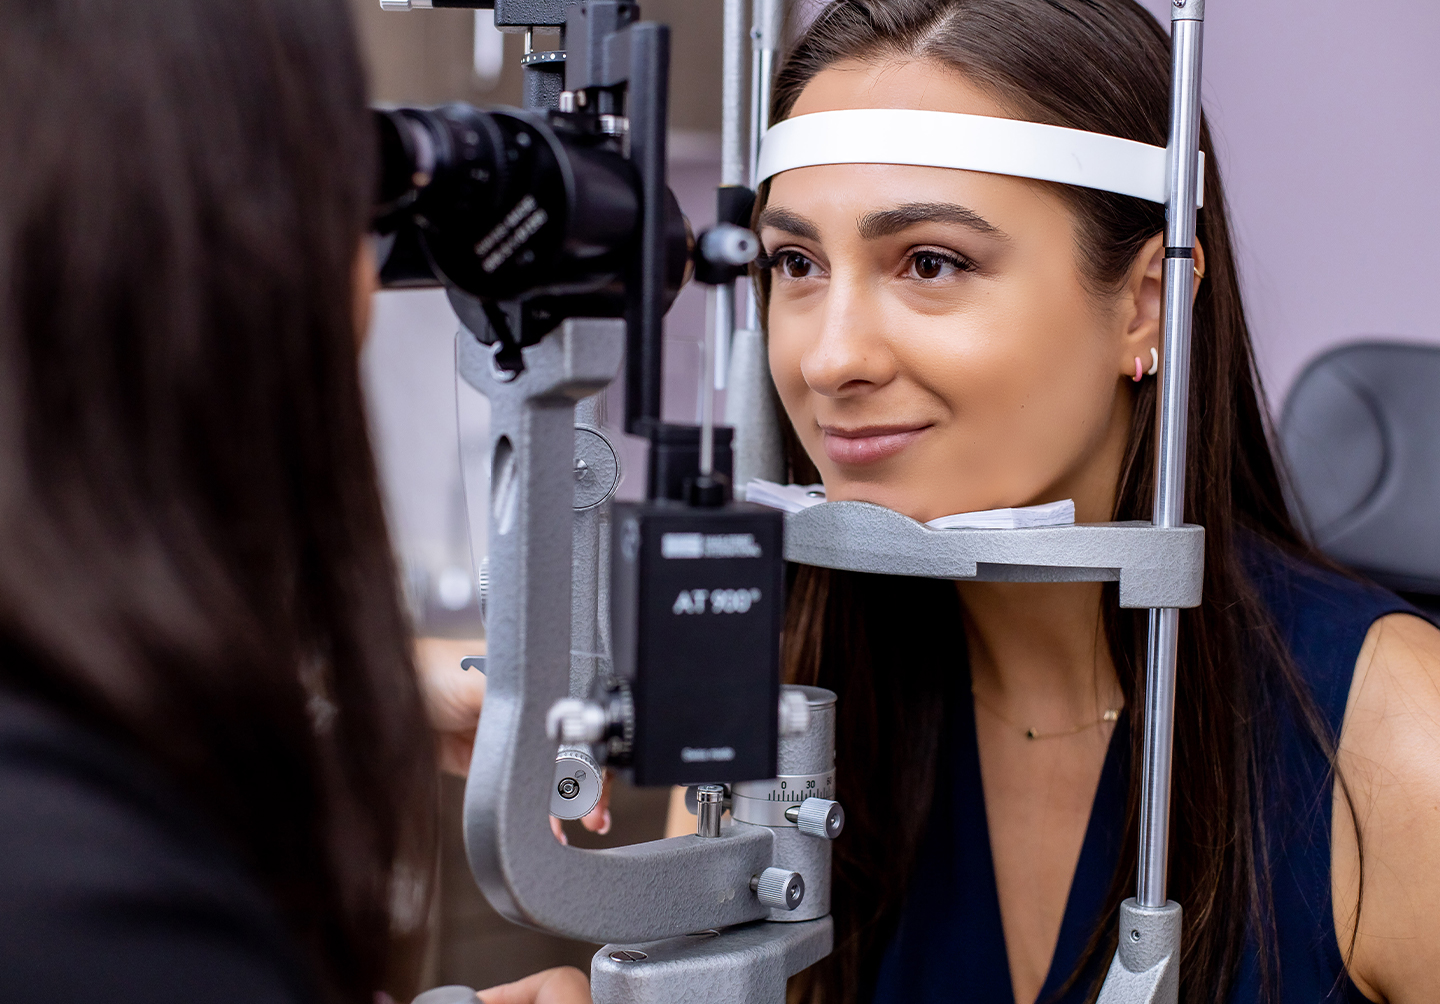 New York Laser Vision Blog | How do I pick an eye doctor?